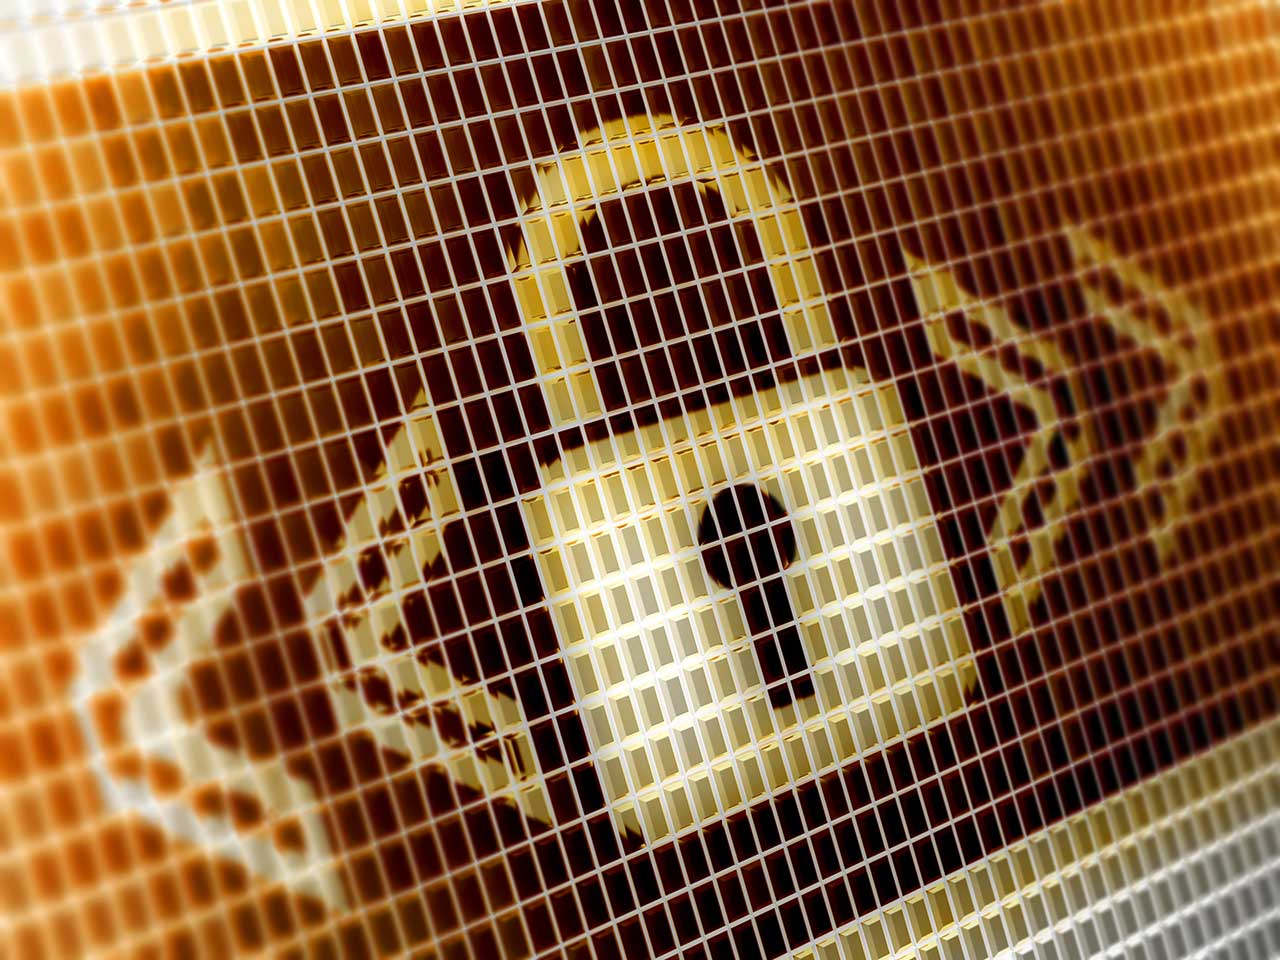 Digital padlock to represent online security